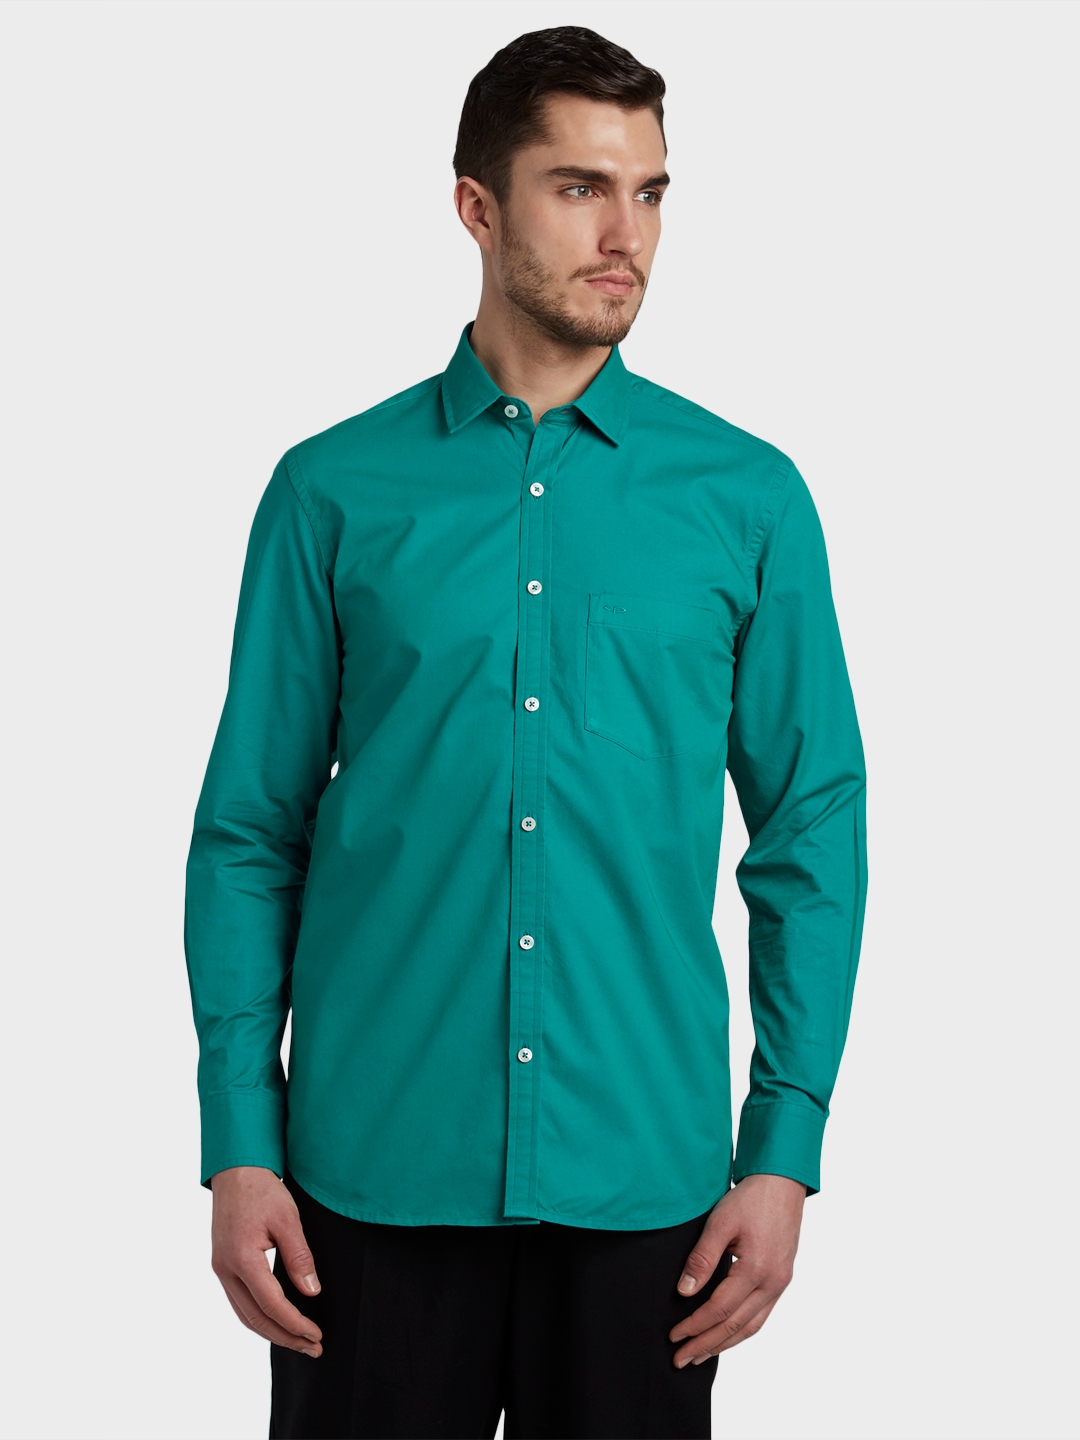 ColorPlus | ColorPlus Medium Green Shirt